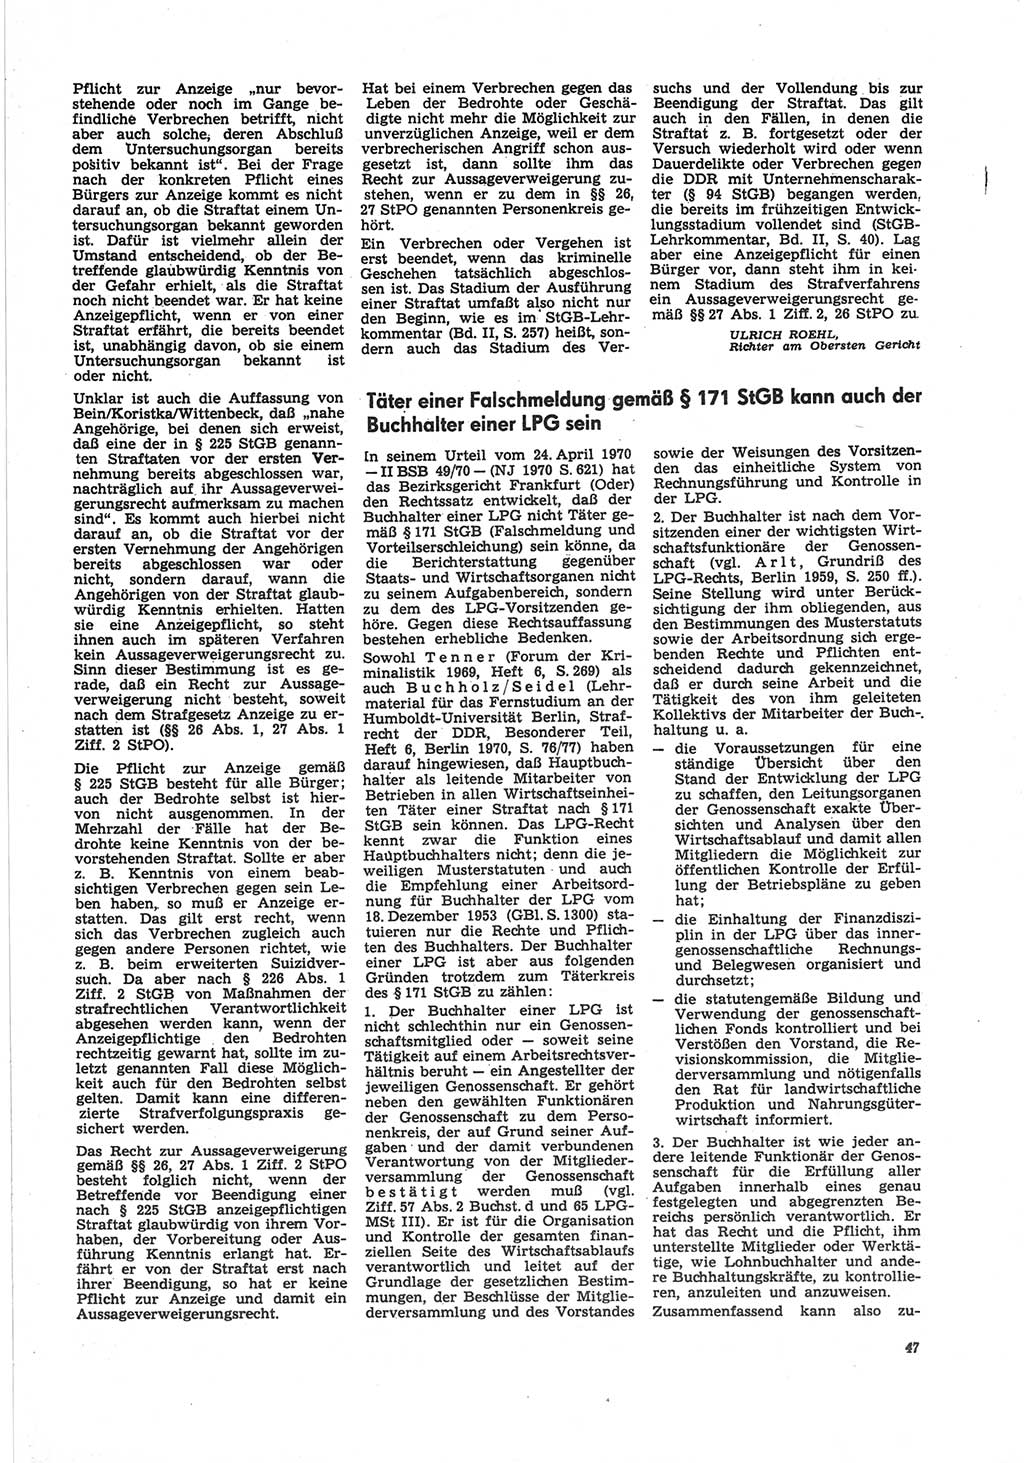 Neue Justiz (NJ), Zeitschrift für Recht und Rechtswissenschaft [Deutsche Demokratische Republik (DDR)], 25. Jahrgang 1971, Seite 47 (NJ DDR 1971, S. 47)